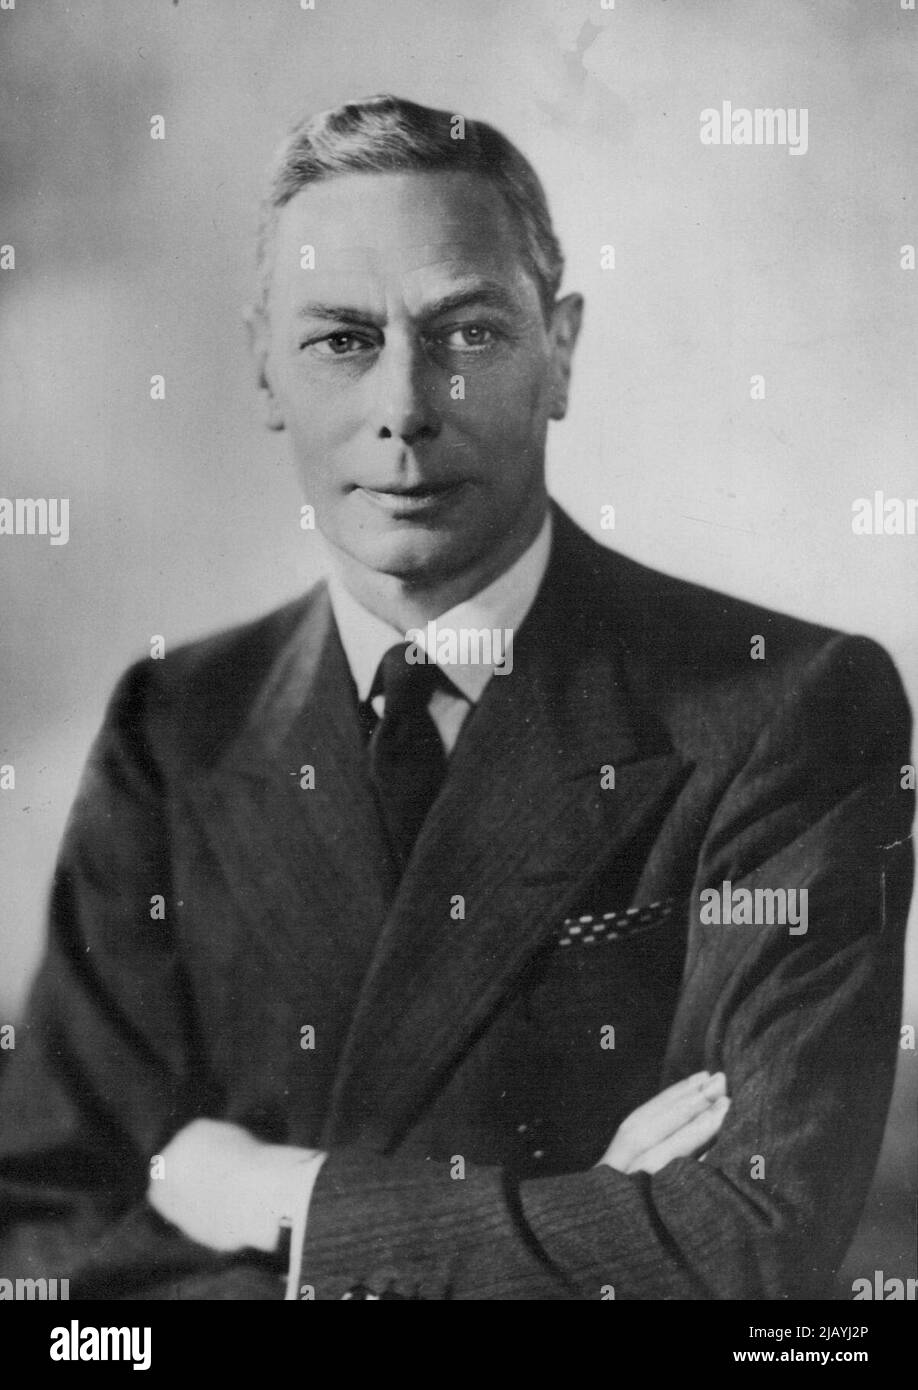 H.M. der König: Ein neues Porträt von H.M. König George VI. Wurde gerade veröffentlicht 17. Juli 1950. (Foto: Sport & General Press Agency, Limited). Stockfoto